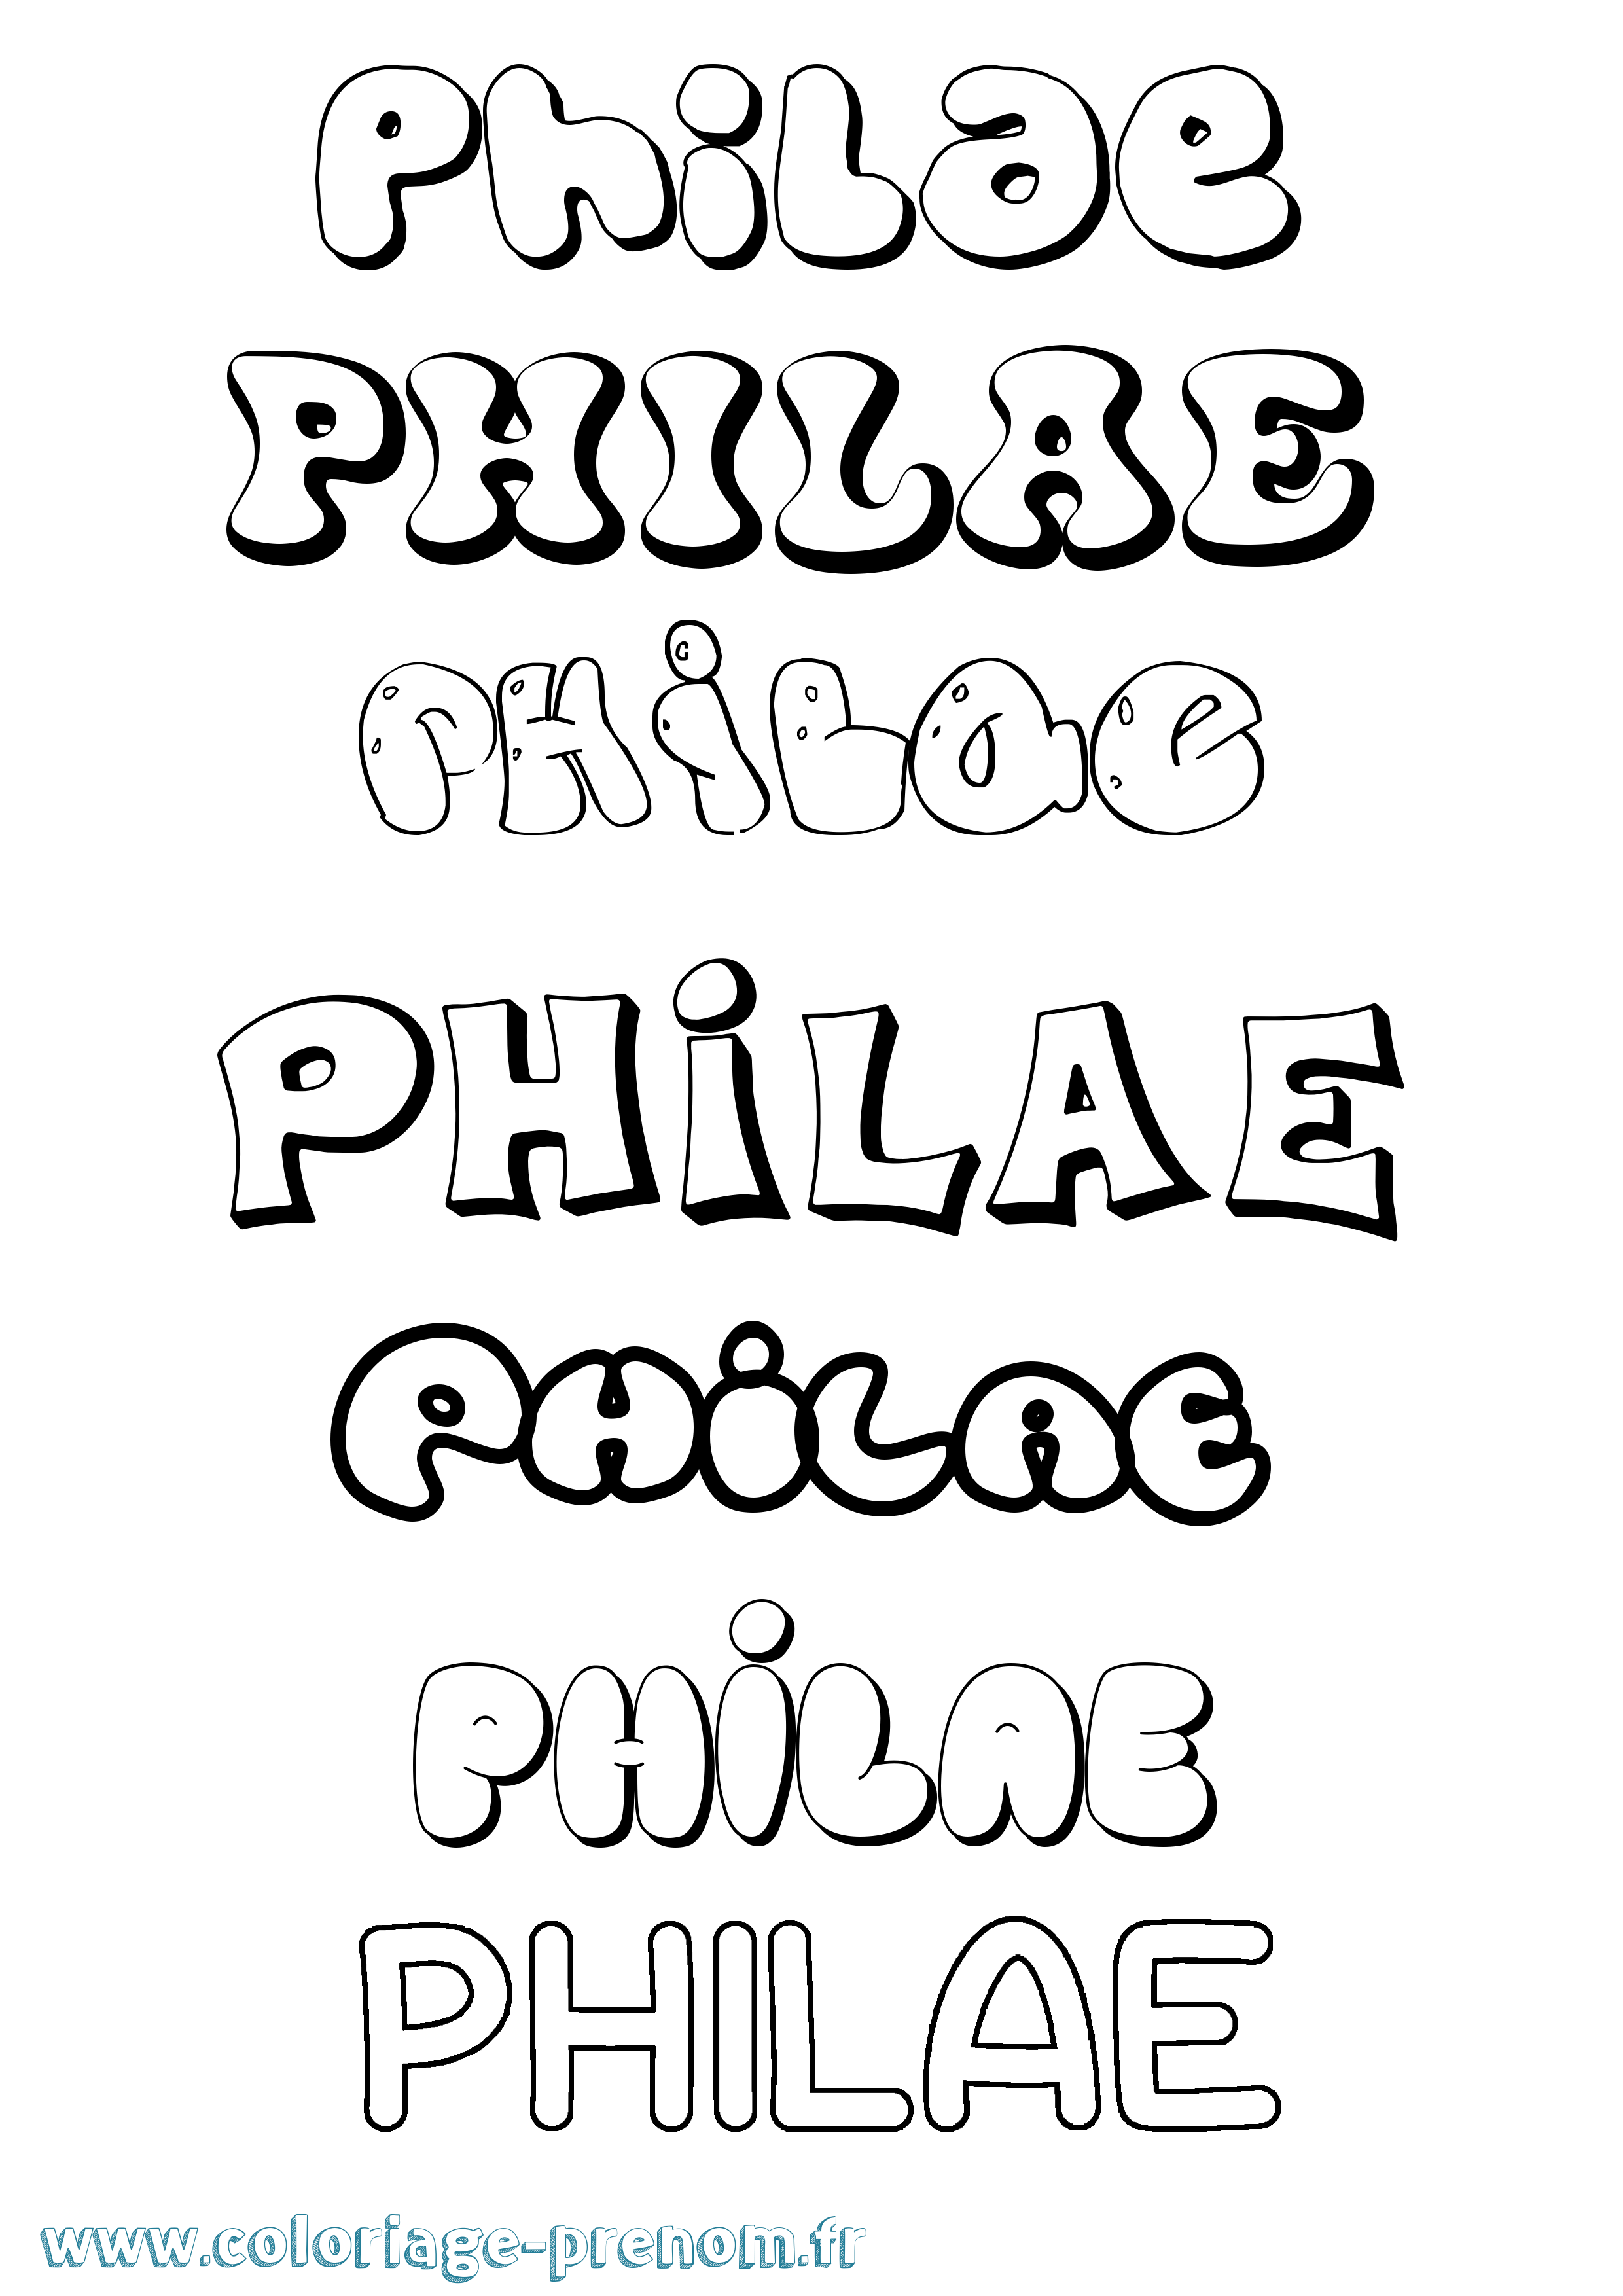 Coloriage prénom Philae Bubble